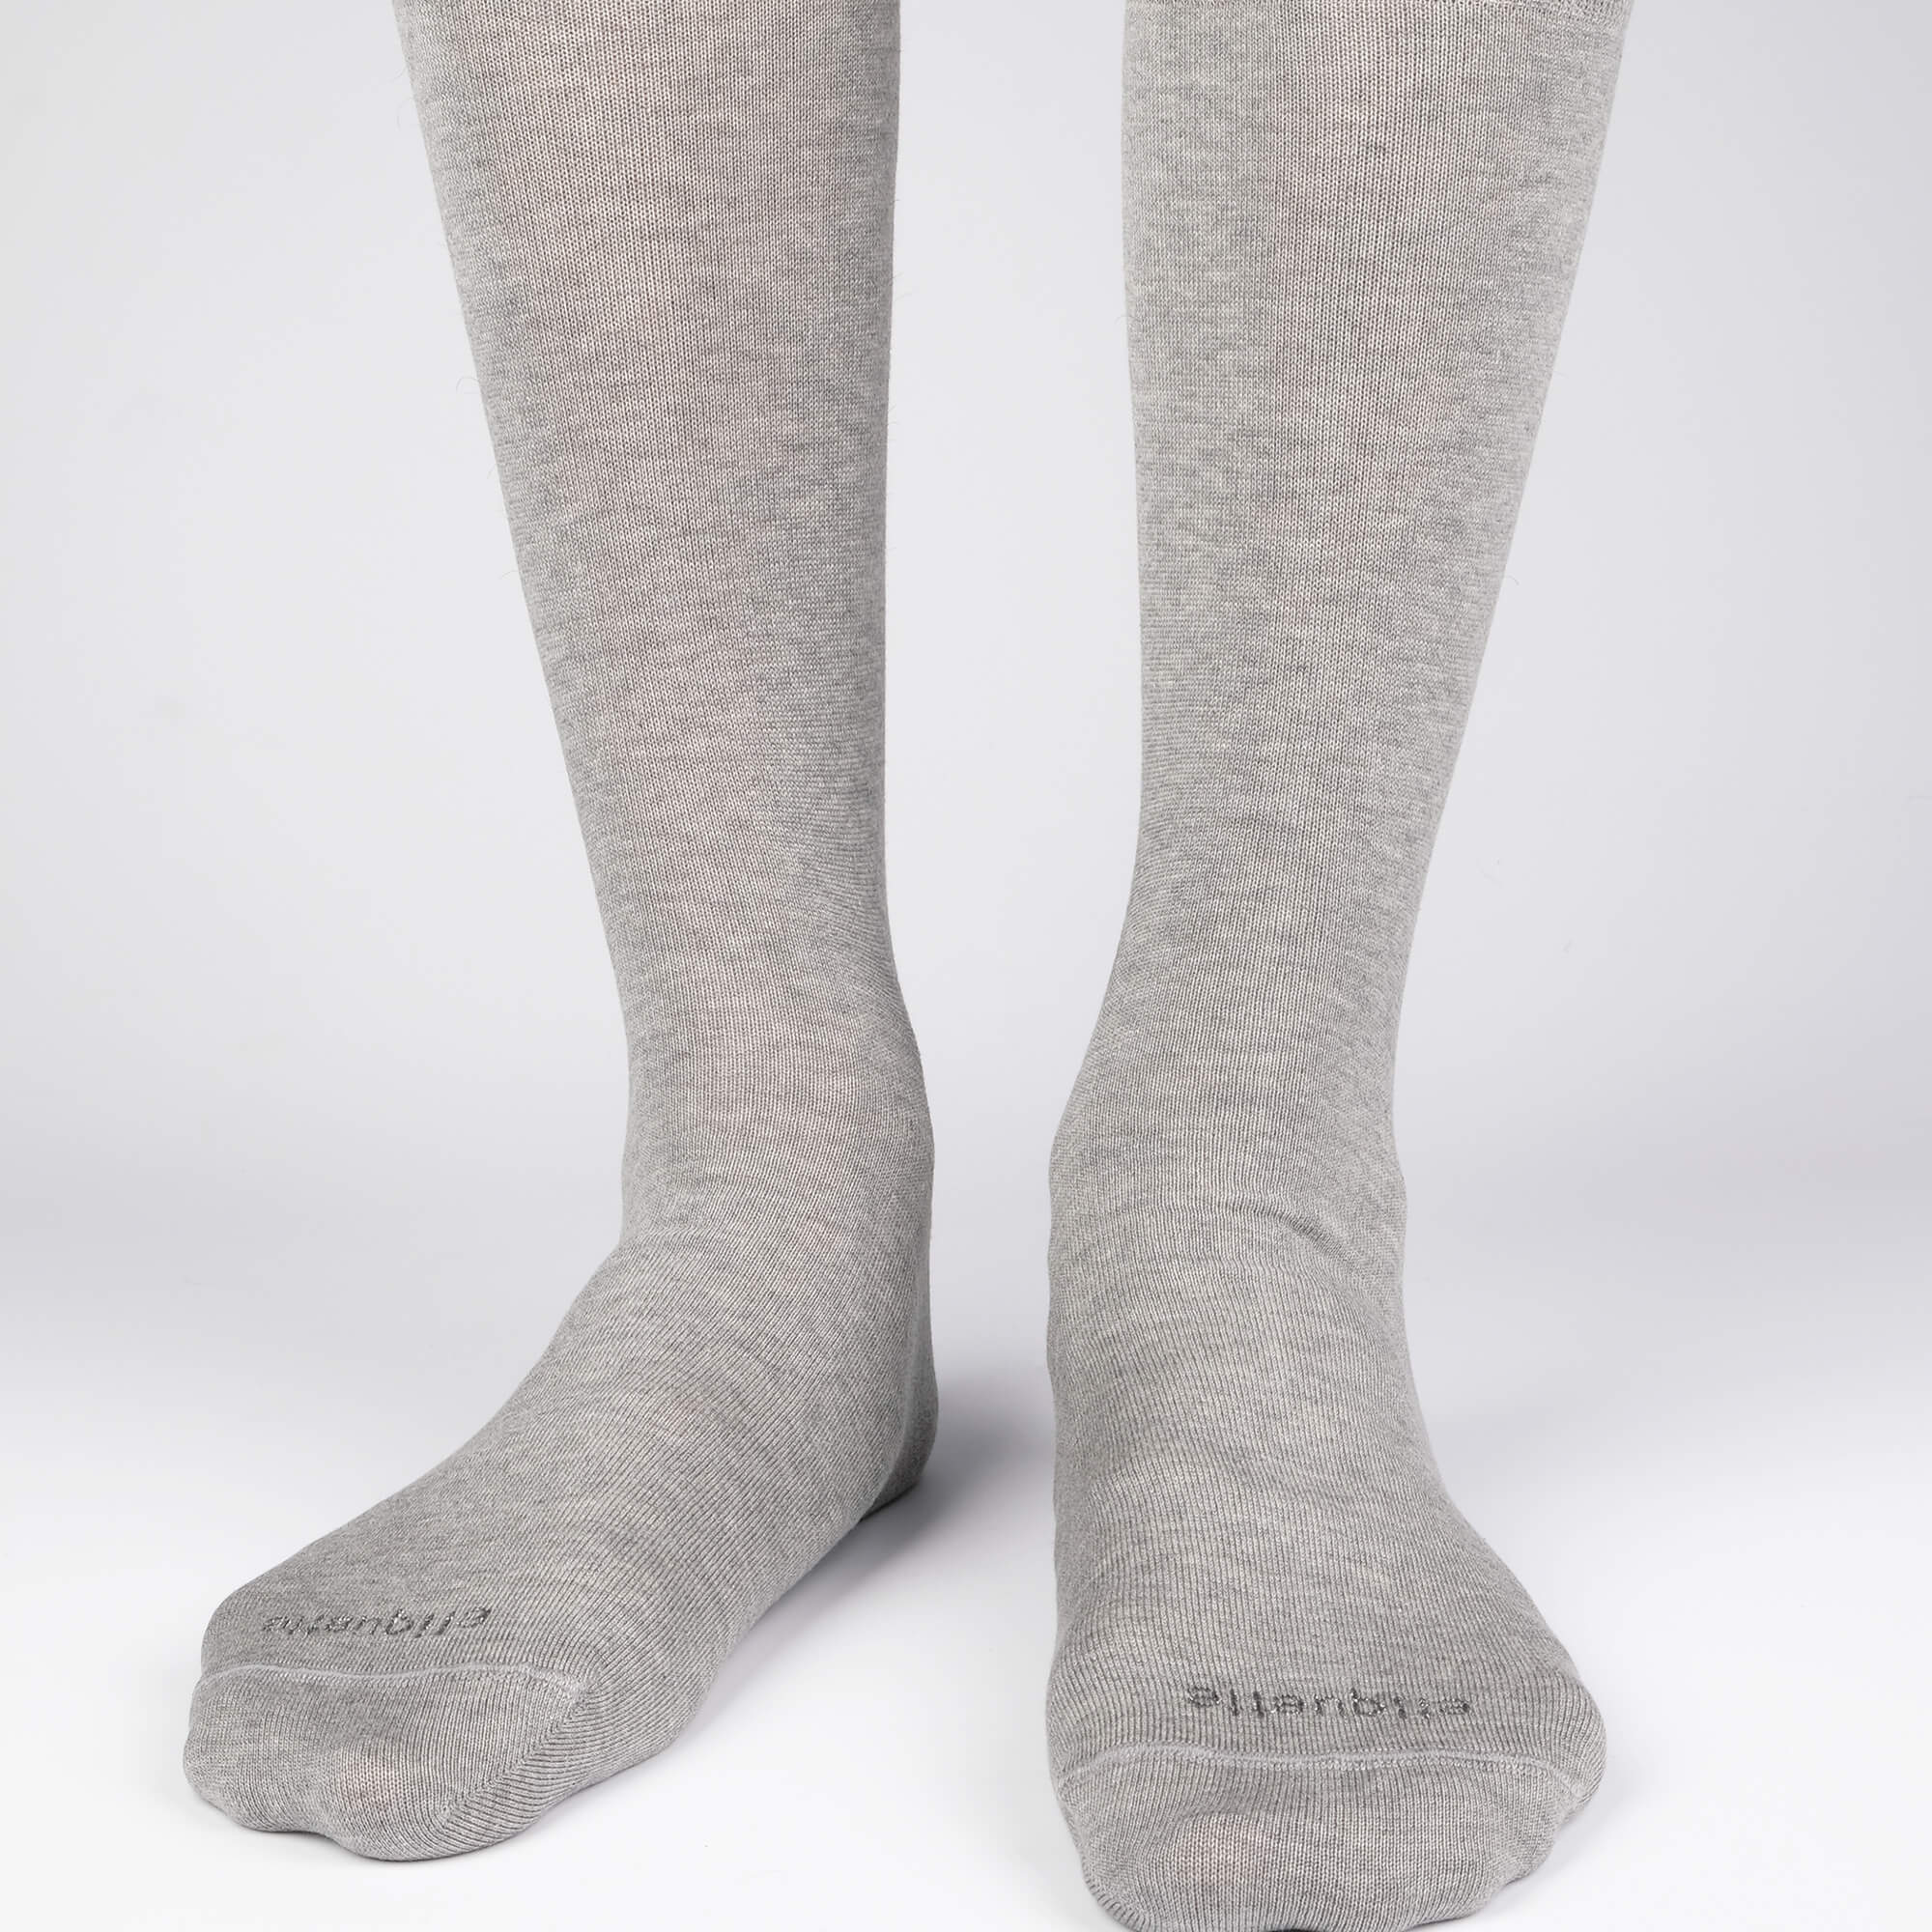 Mens Socks - Basic Luxuries Men's Socks - Light Grey⎪Etiquette Clothiers